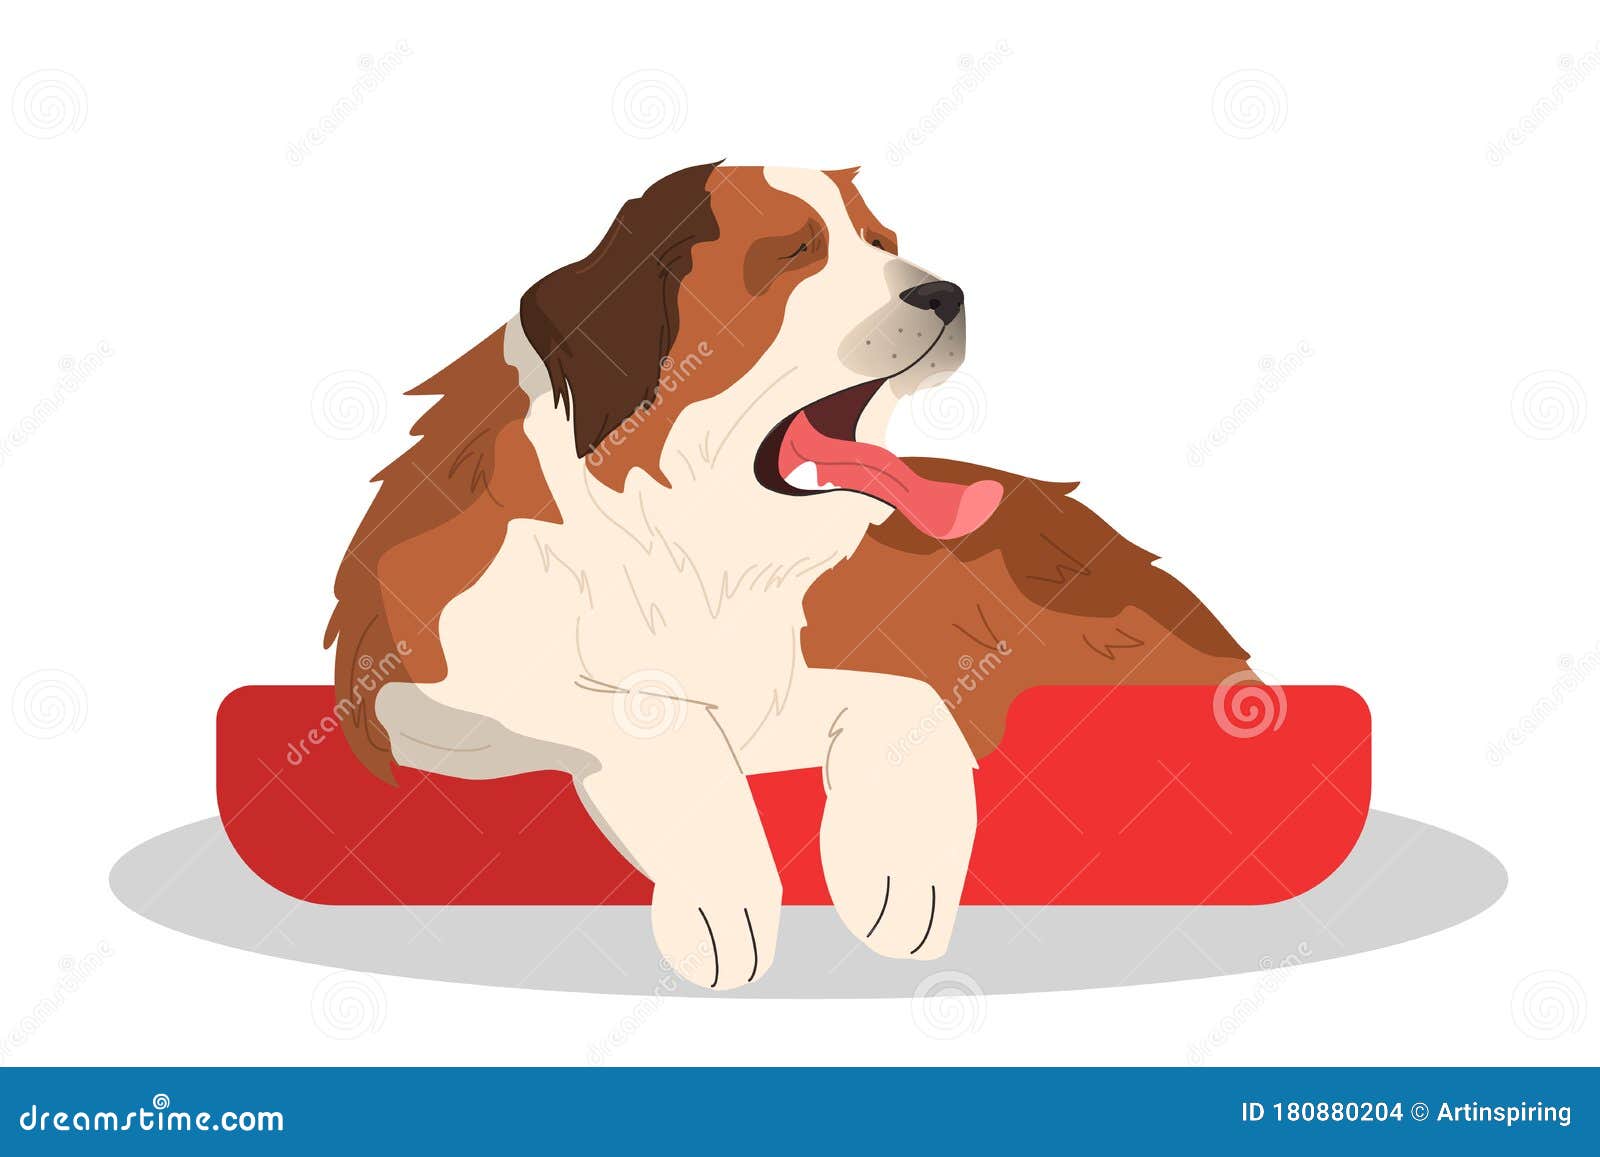 cute yawning sleepy dog. purebread saintbernar lying. funny